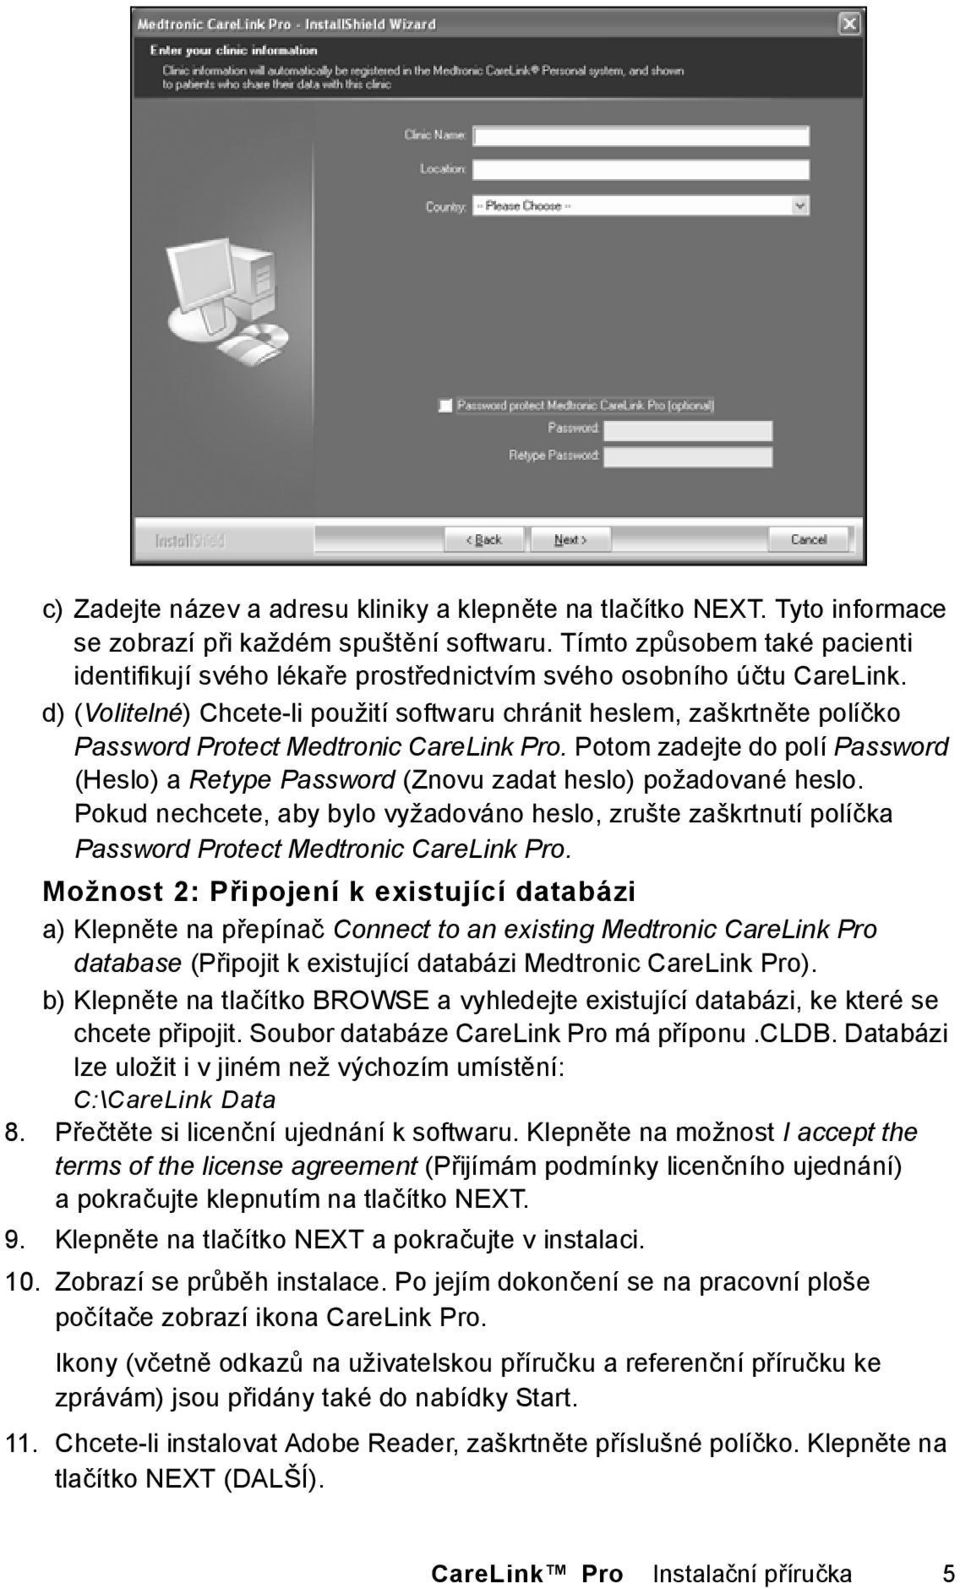 d) (Volitelné) Chcete-li použití softwaru chránit heslem, zaškrtněte políčko Password Protect Medtronic CareLink Pro.